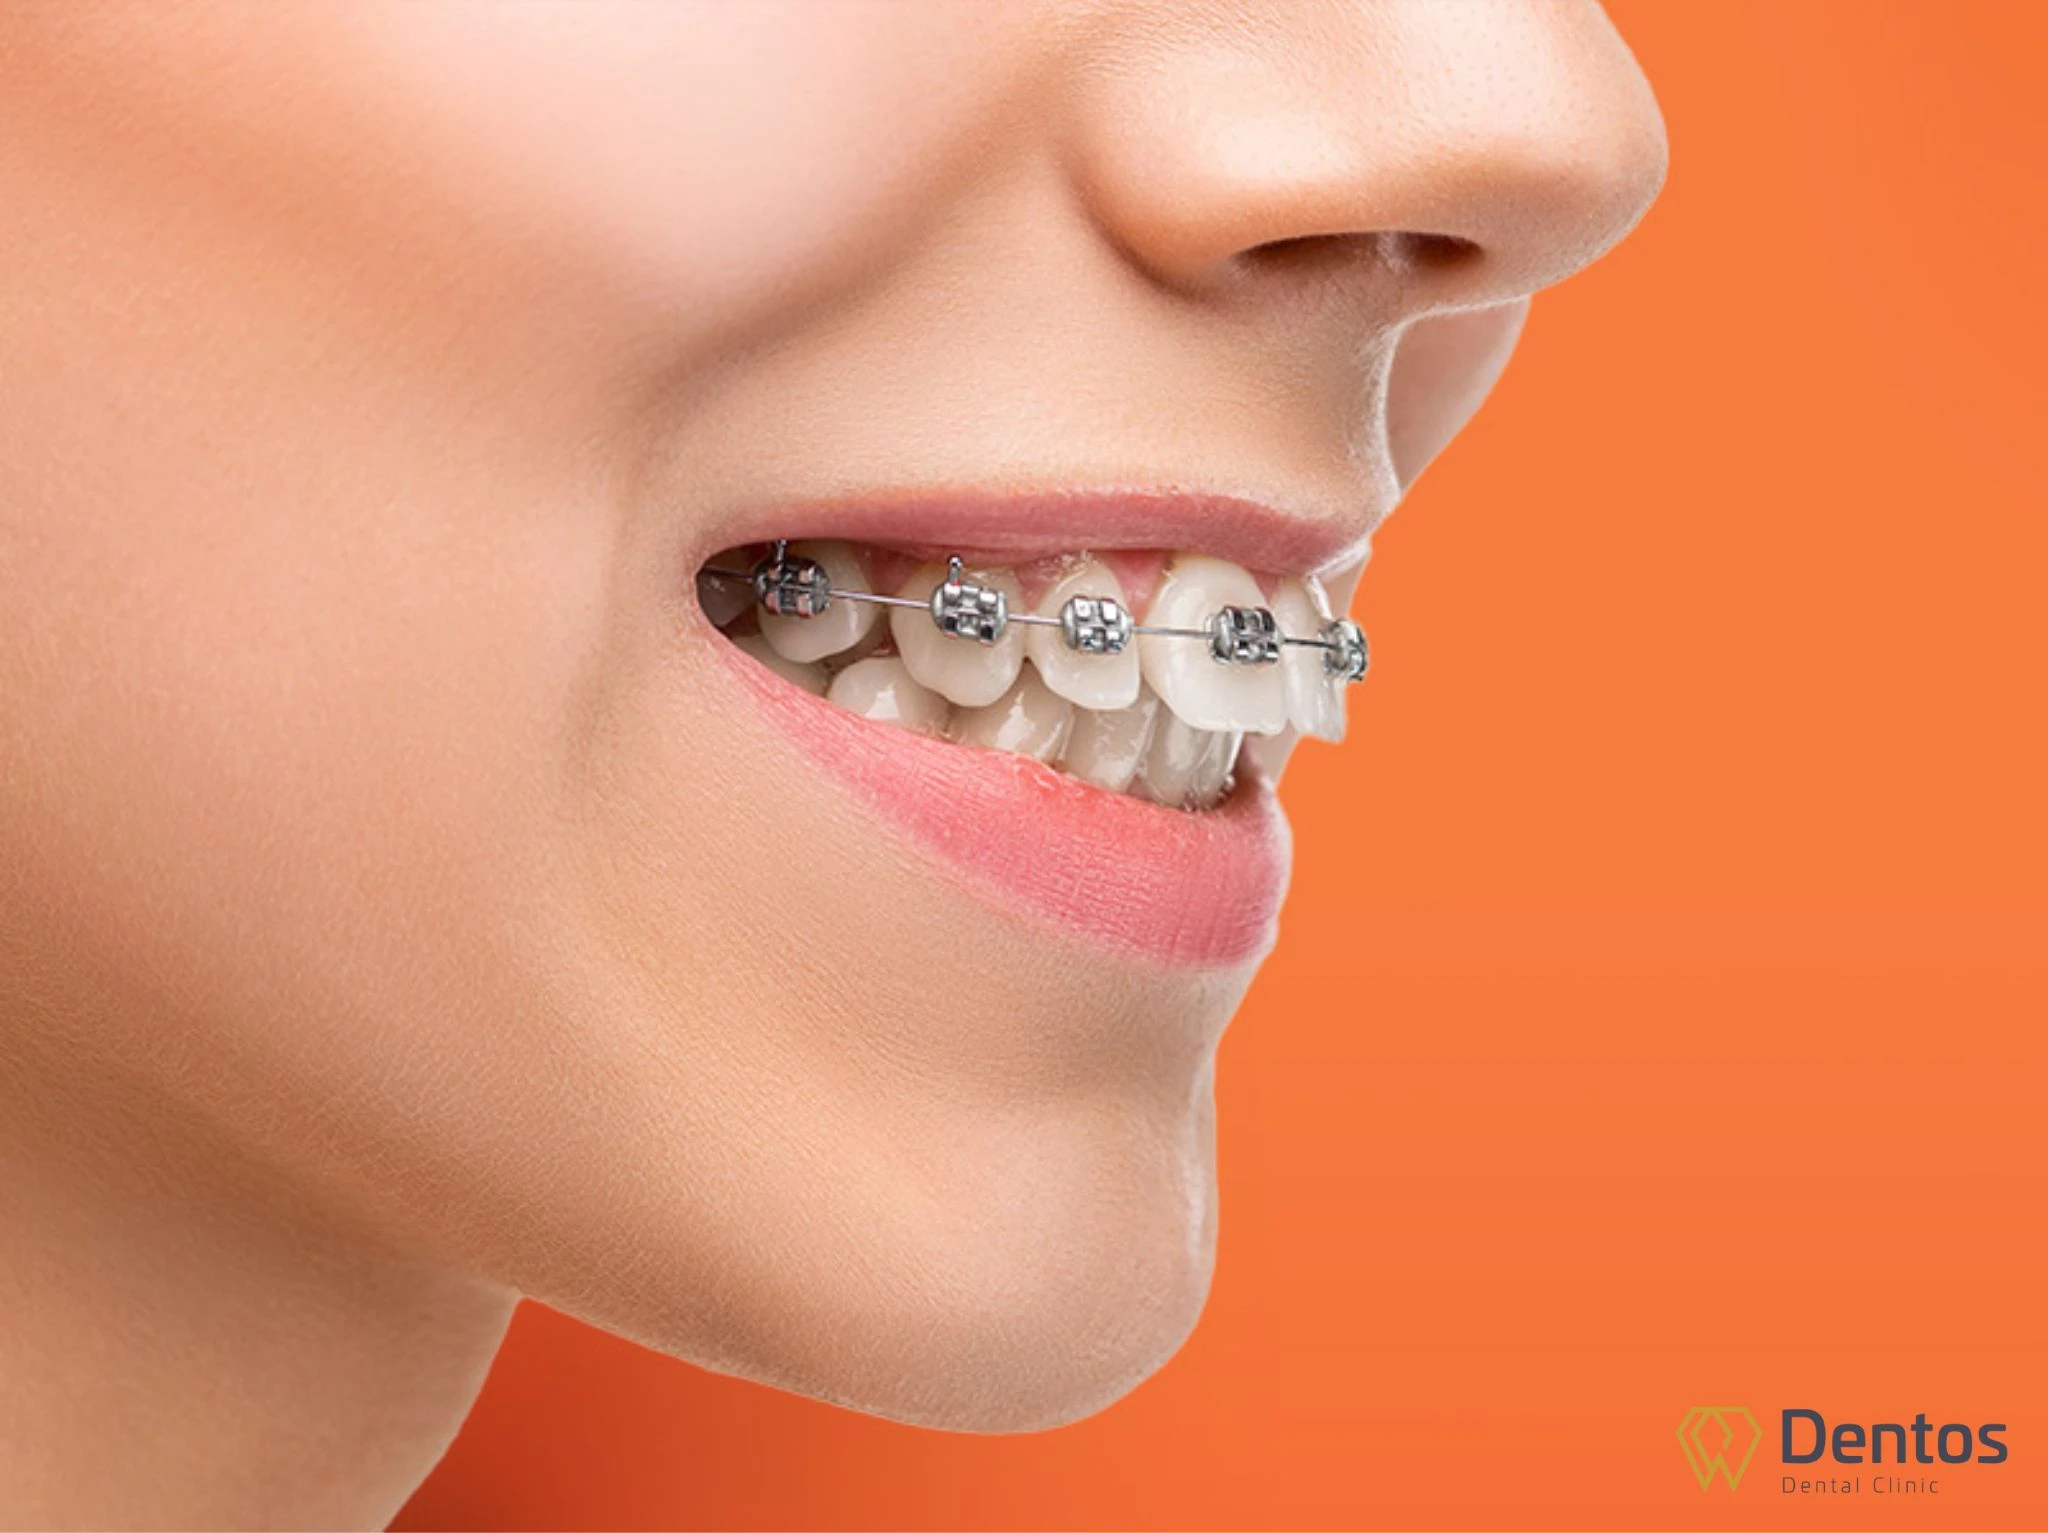 Niềng răng là sử dụng các khí cụ chuyên dụng nhằm điều chỉnh vị trí của các răng